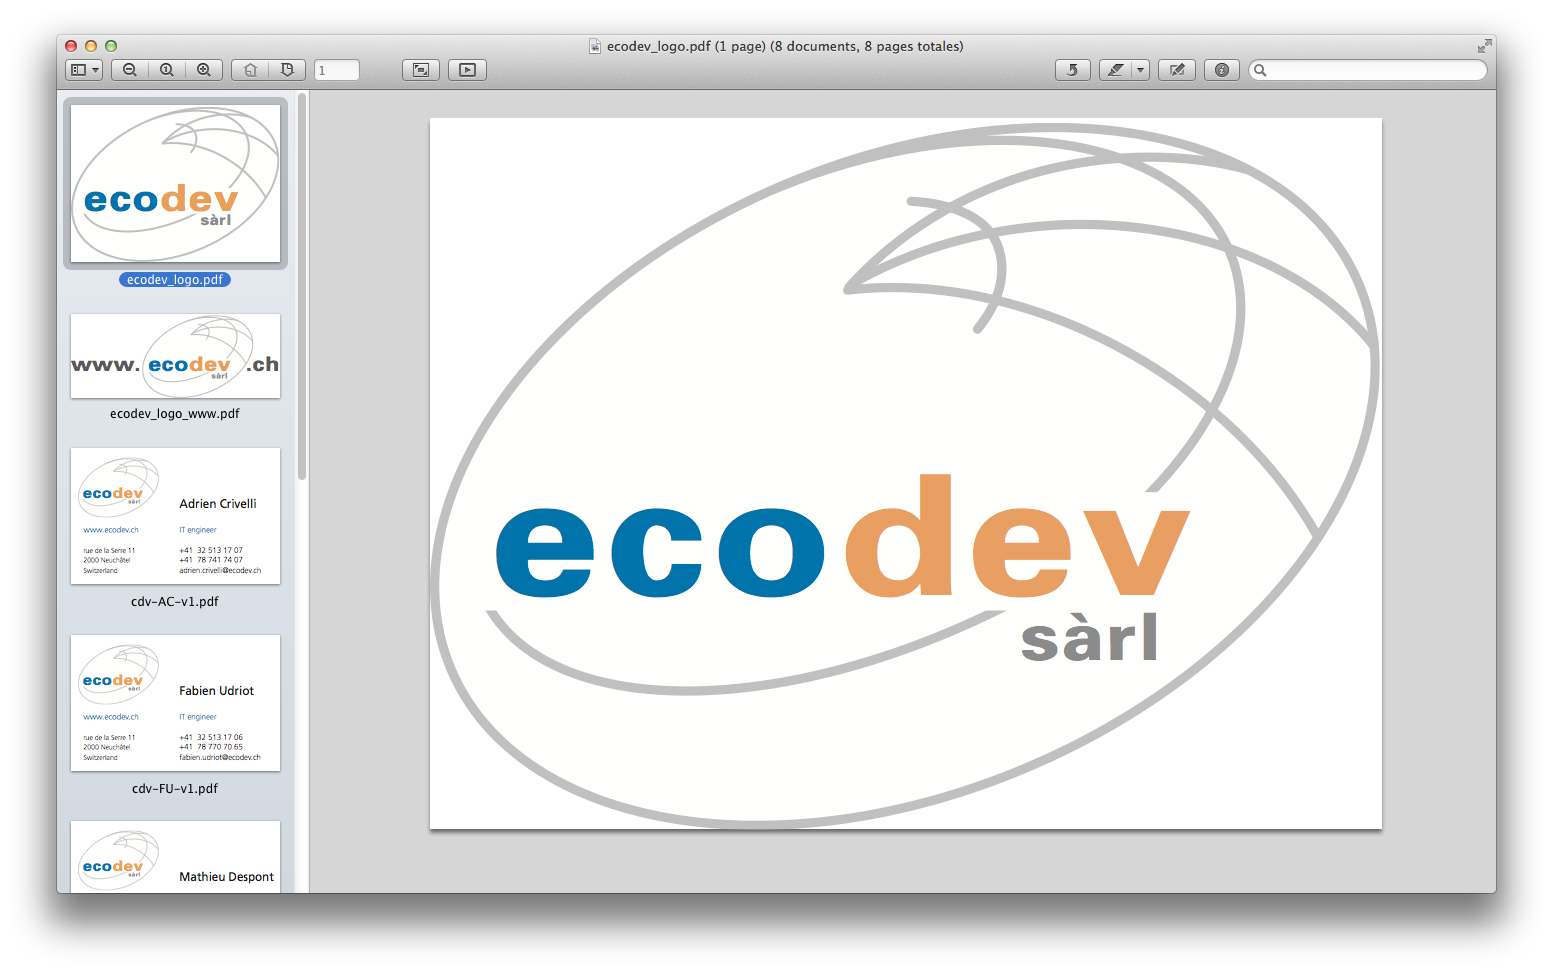 Ecodev - logo